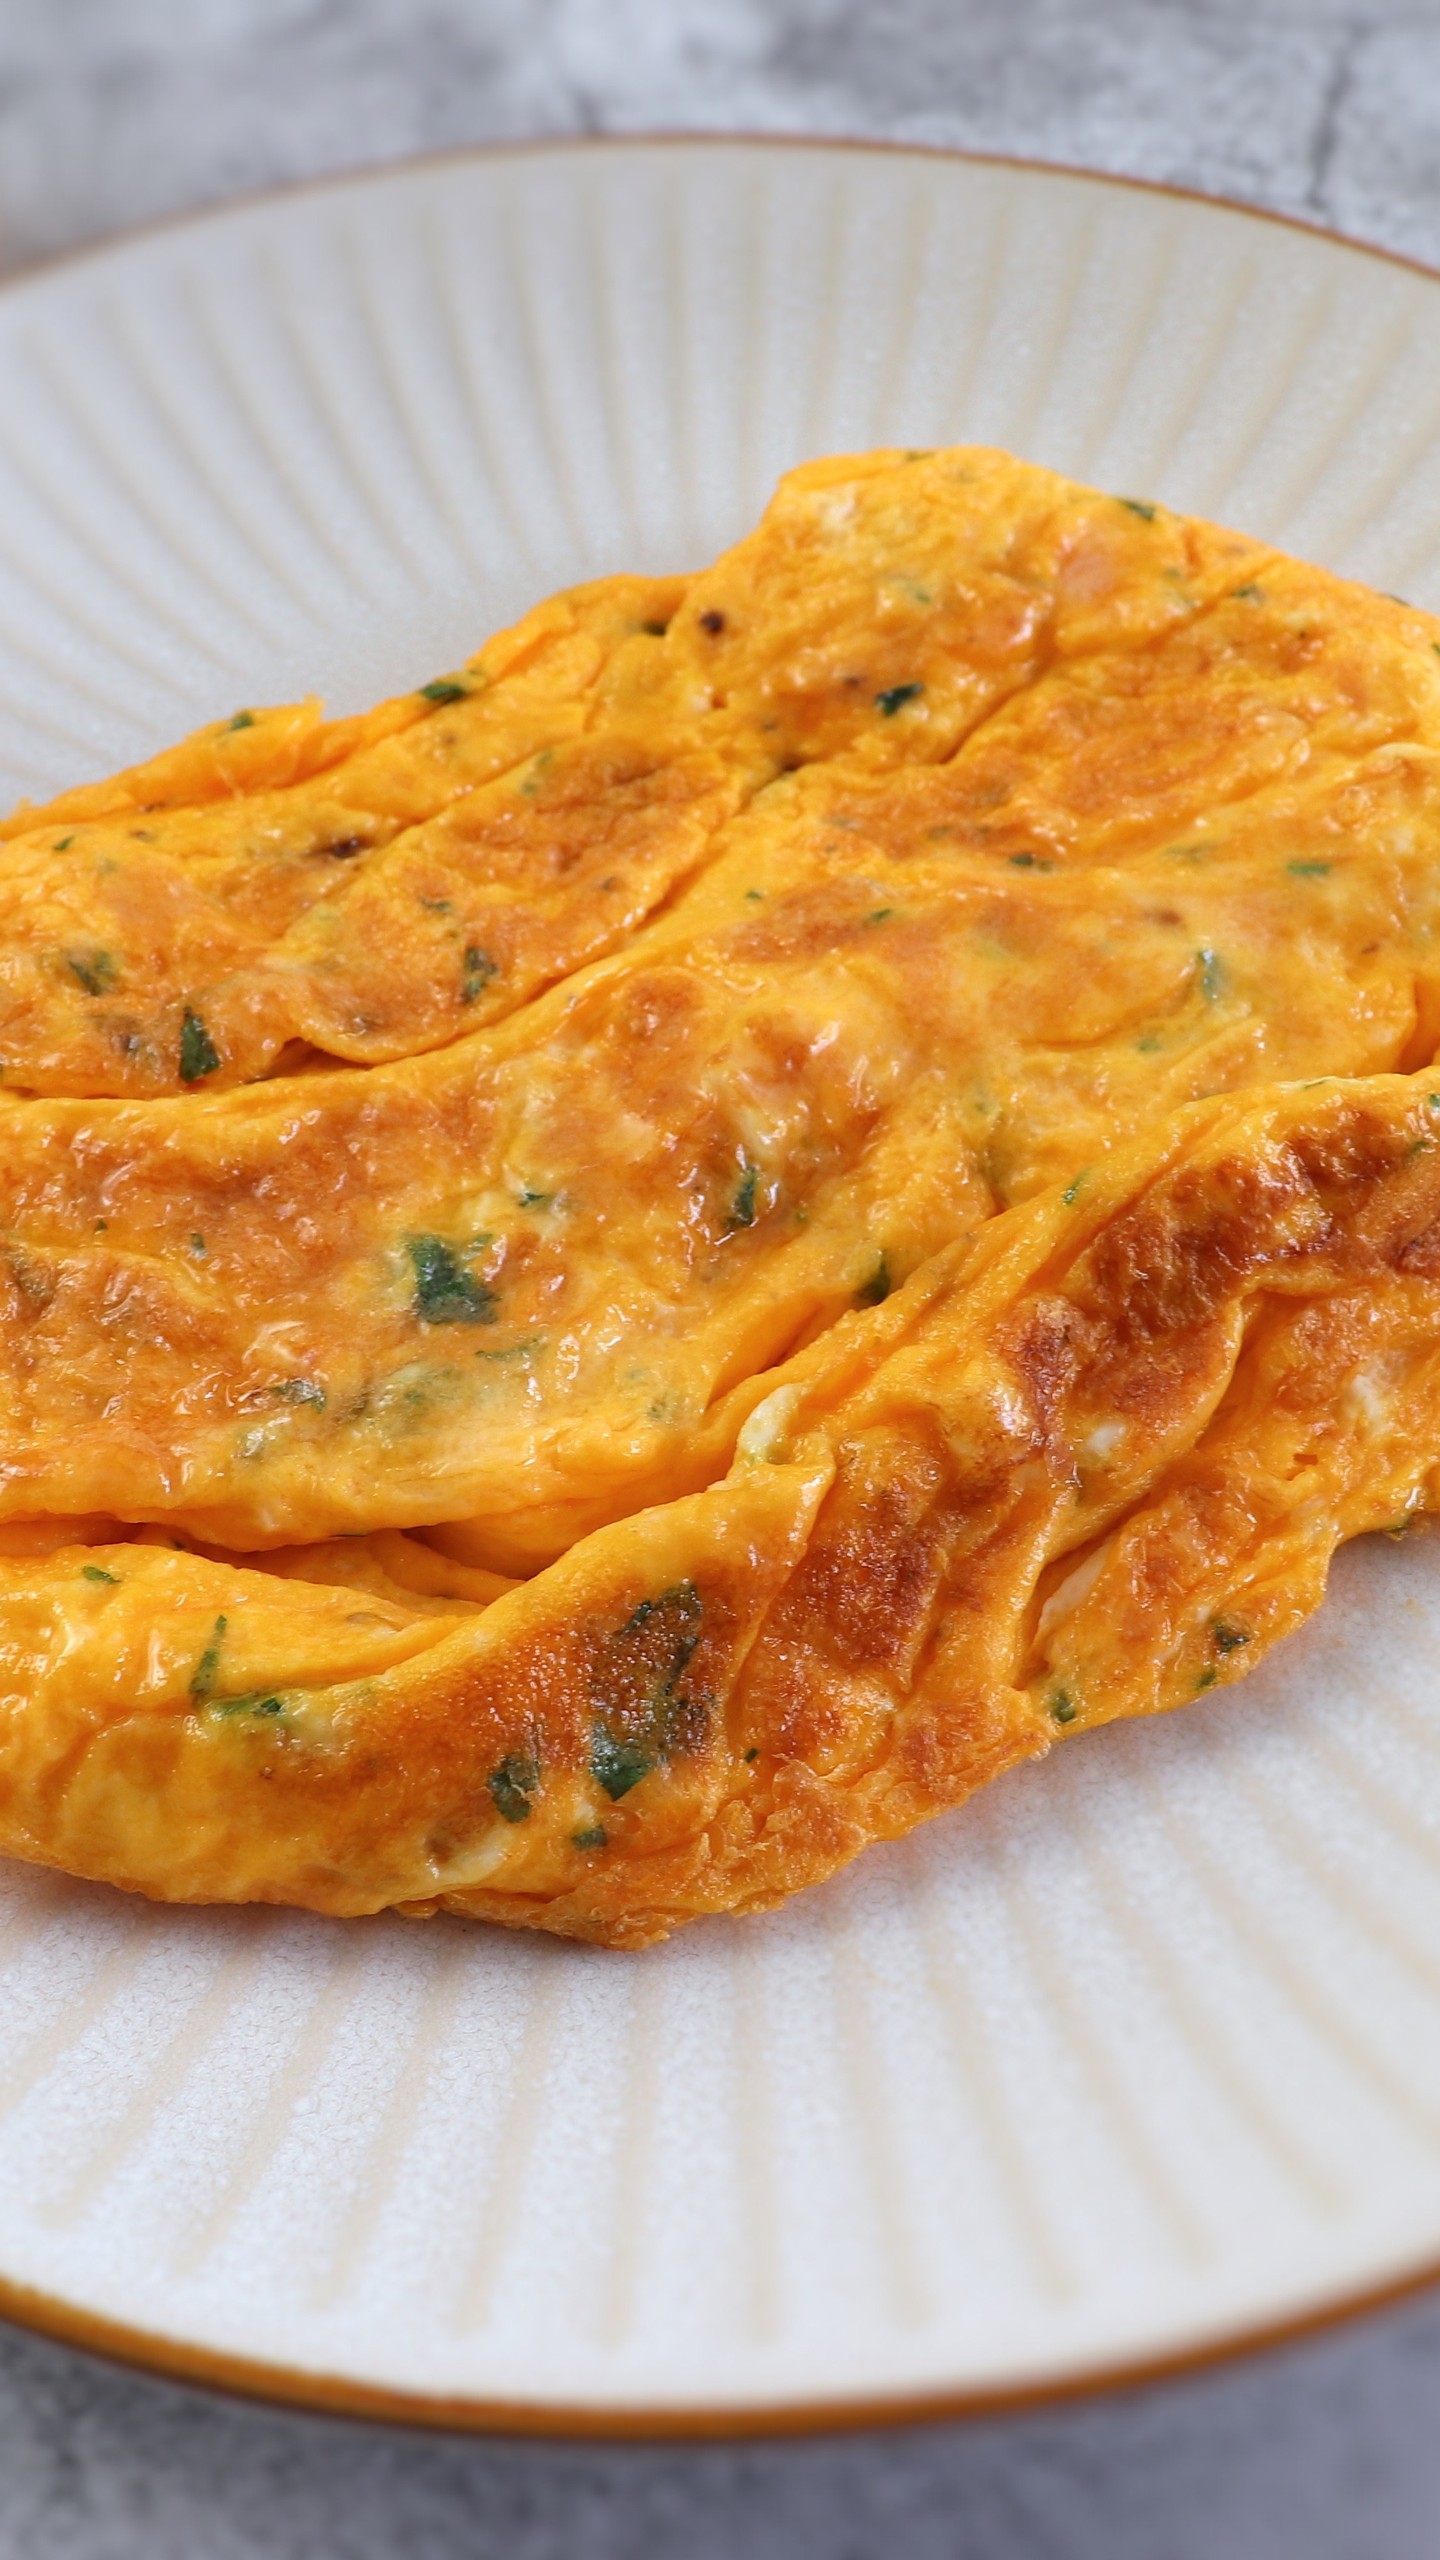 Omelete simples | Food From Portugal

Gosta de ovos? Quer preparar uma receita simples e rápida? Faça esta deliciosa omelete e sirva com batata frita e salada de alface. É uma receita com poucos ingredientes que todos vão gostar. Bom apetite!!!

Receita: https://www.foodfromportugal.com/pt-pt/receitas/omelete-simples/

#food #video #vídeo #easy #easyrecipes #instafood #bolo #bolocaseiro #receitas #receitacomvideo #omelete #omeletesimples #ovos